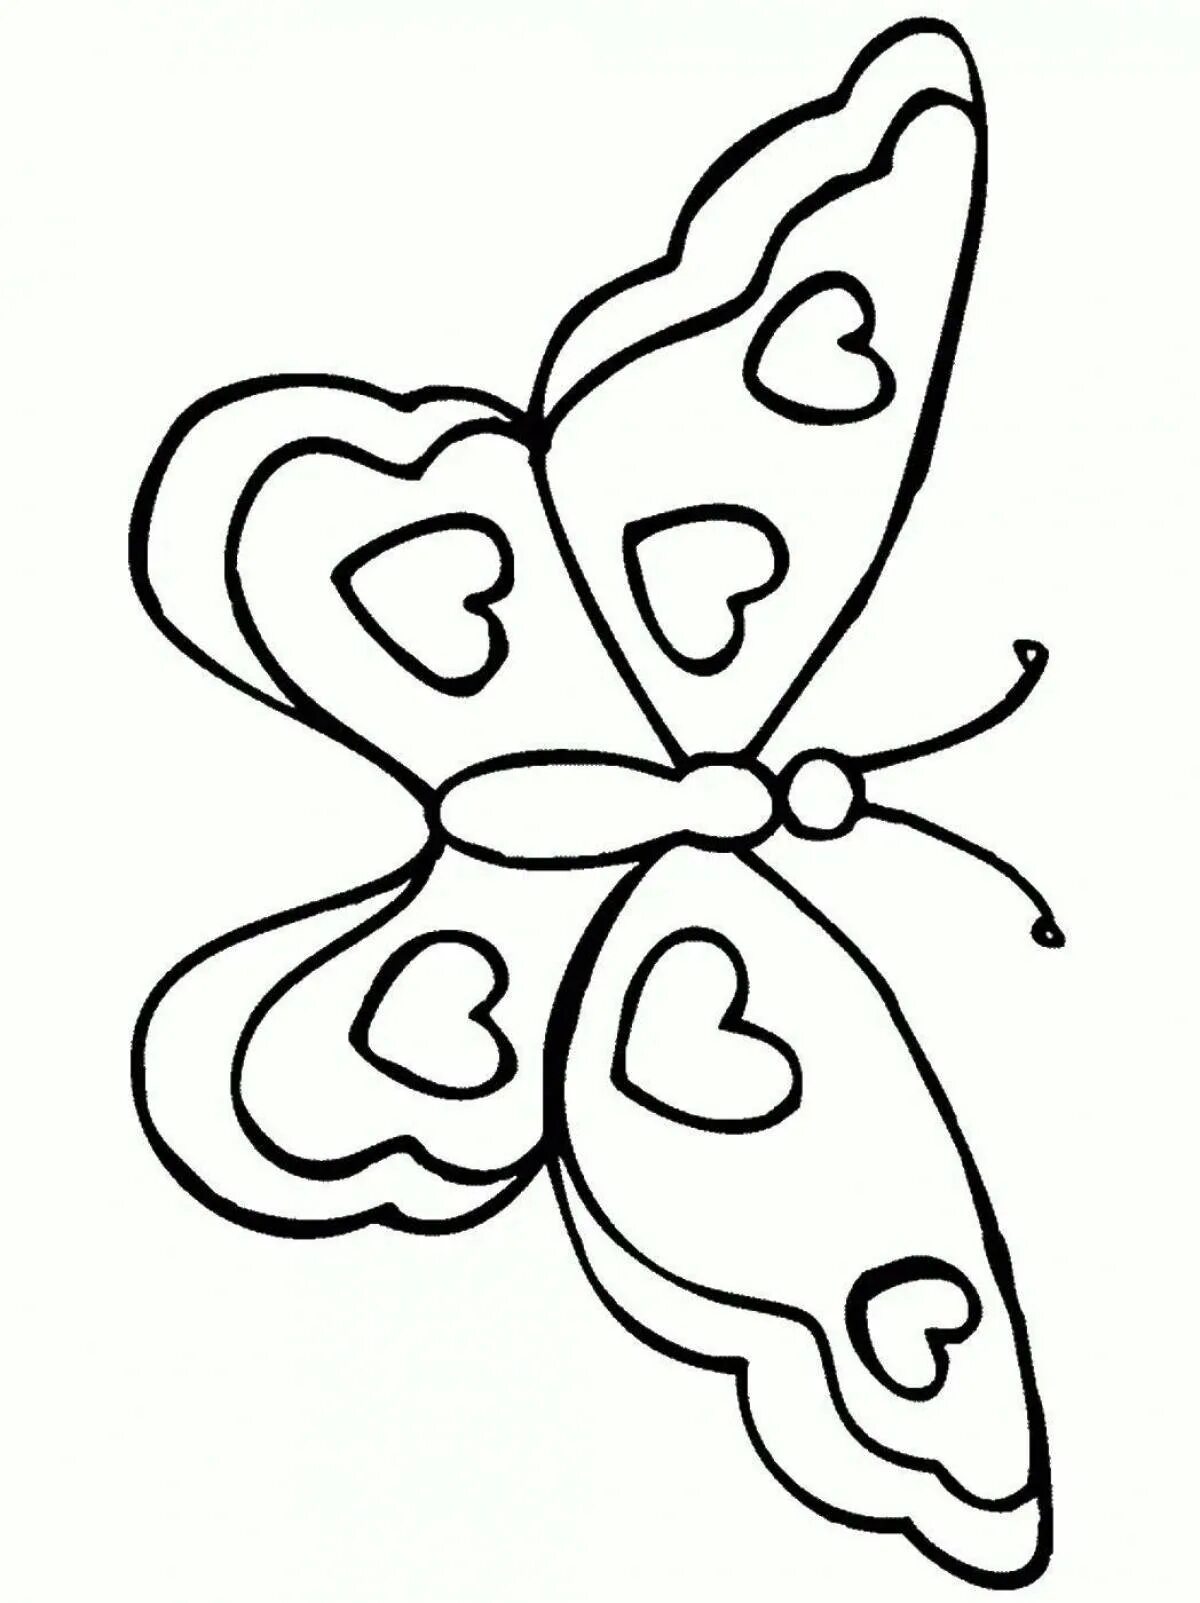 Картинки для детей 7 лет. Трафареты для рисования для детей. Бабочка трафарет для раскрашивания. Трафарет бабочки для рисования. Бабочка шаблон для рисования.